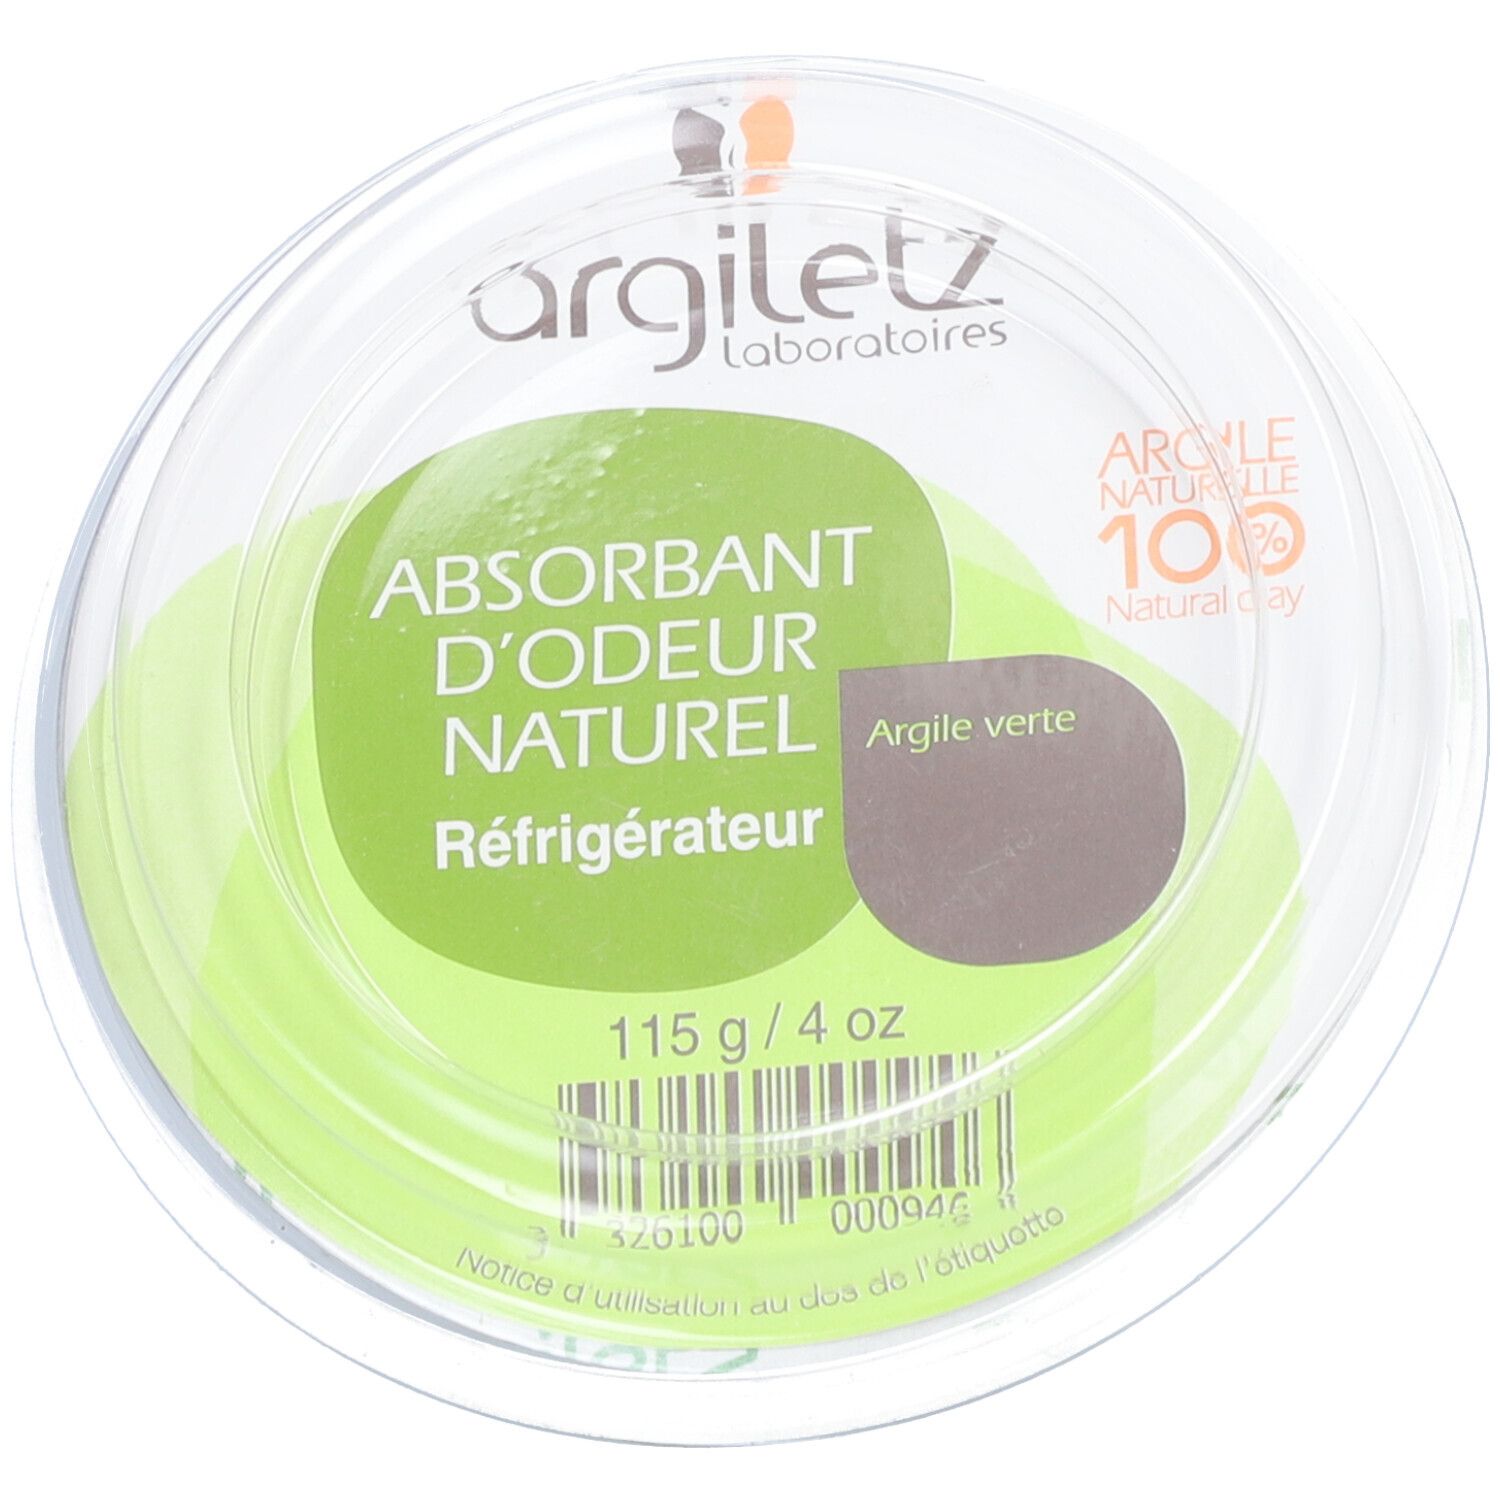 Argiletz Absorbant d’odeur à l’argile verte pour réfrigérateurs